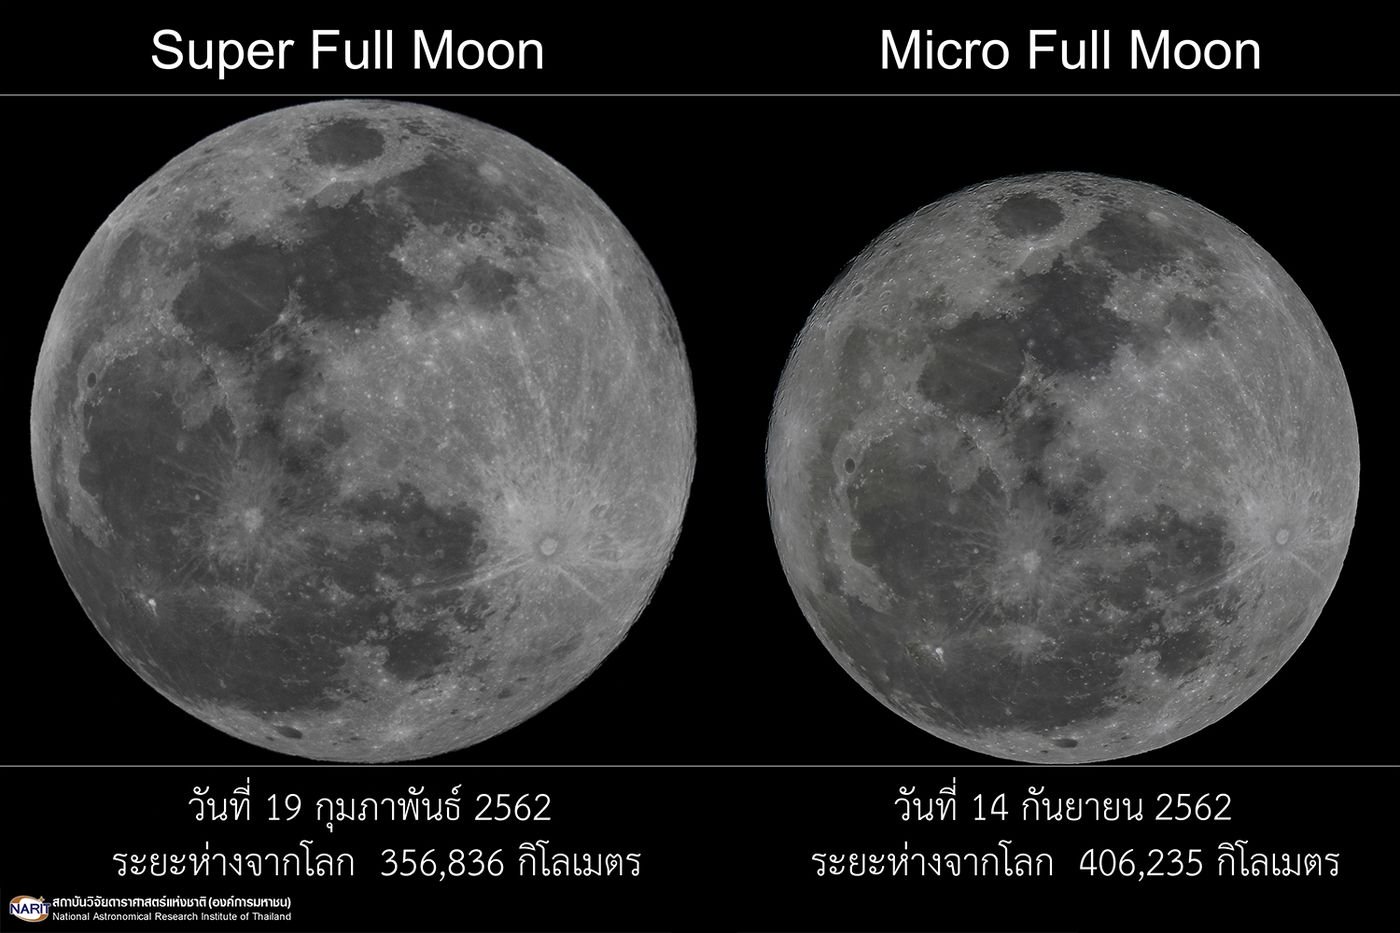 สดร. เผยภาพดวงจันทร์เต็มดวงไกลโลกที่สุดในรอบปี 2562